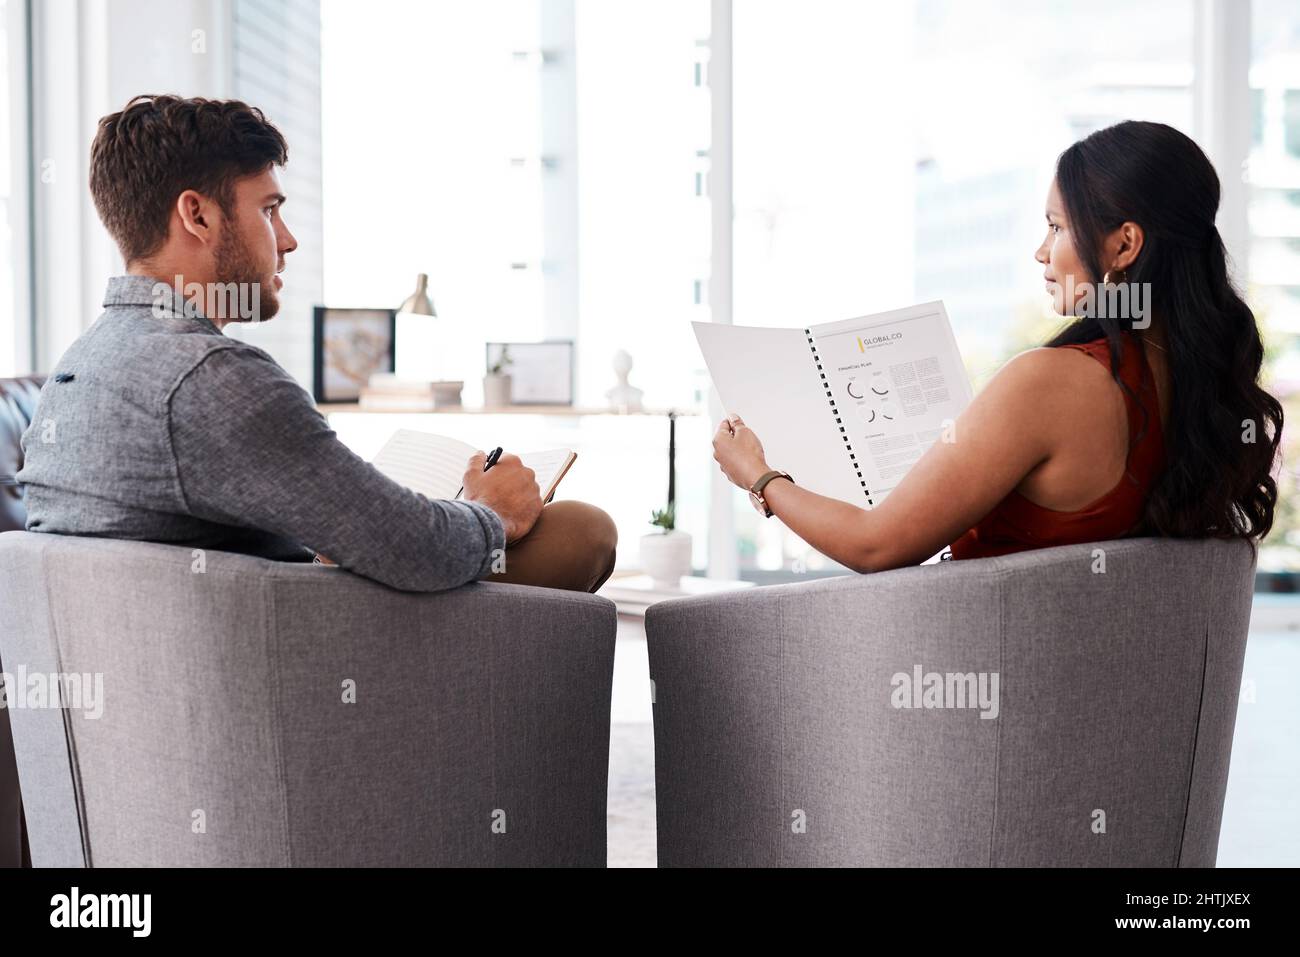 La campagne créative la plus innovante. Photo de deux jeunes concepteurs ayant une discussion dans un bureau. Banque D'Images